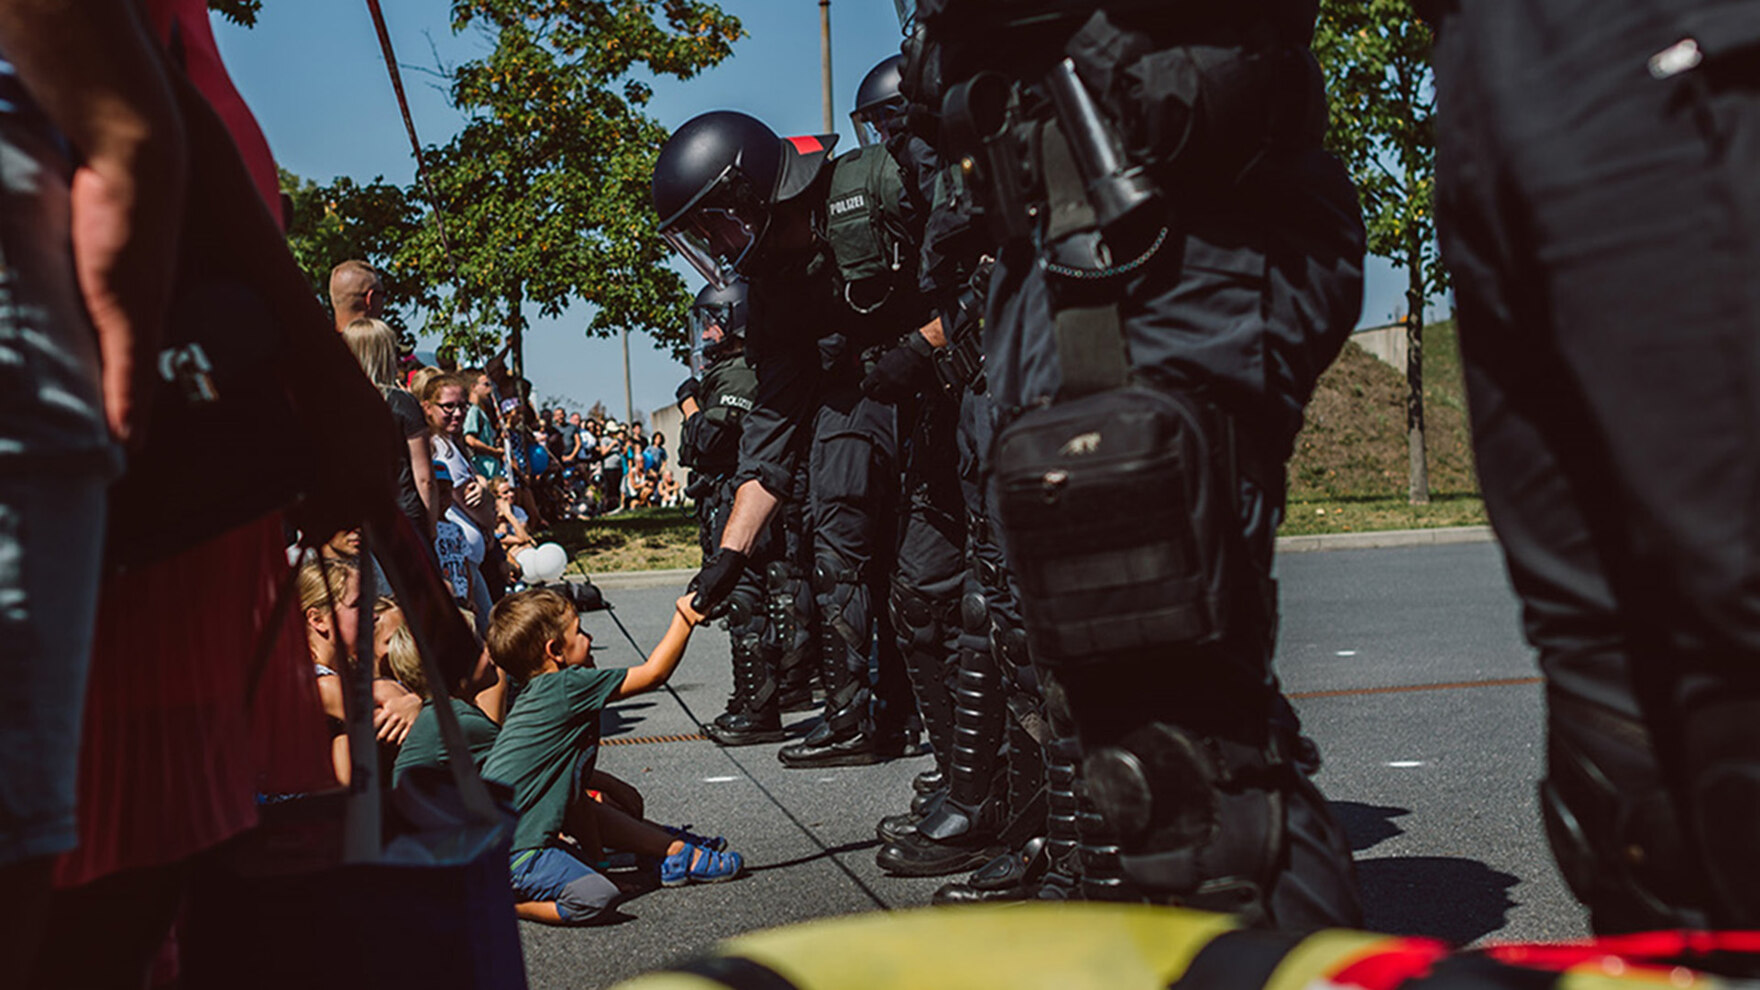 Einige Kinder sitzen und stehen mit weiteren Besuchern auf dem Fußboden vor uniformierten Bereitschaftspolizisten. Einer der Polizisten mit Helm beugt sich zu einem Kind herunter und schüttelt dem lächelnden Jungen die Hand.